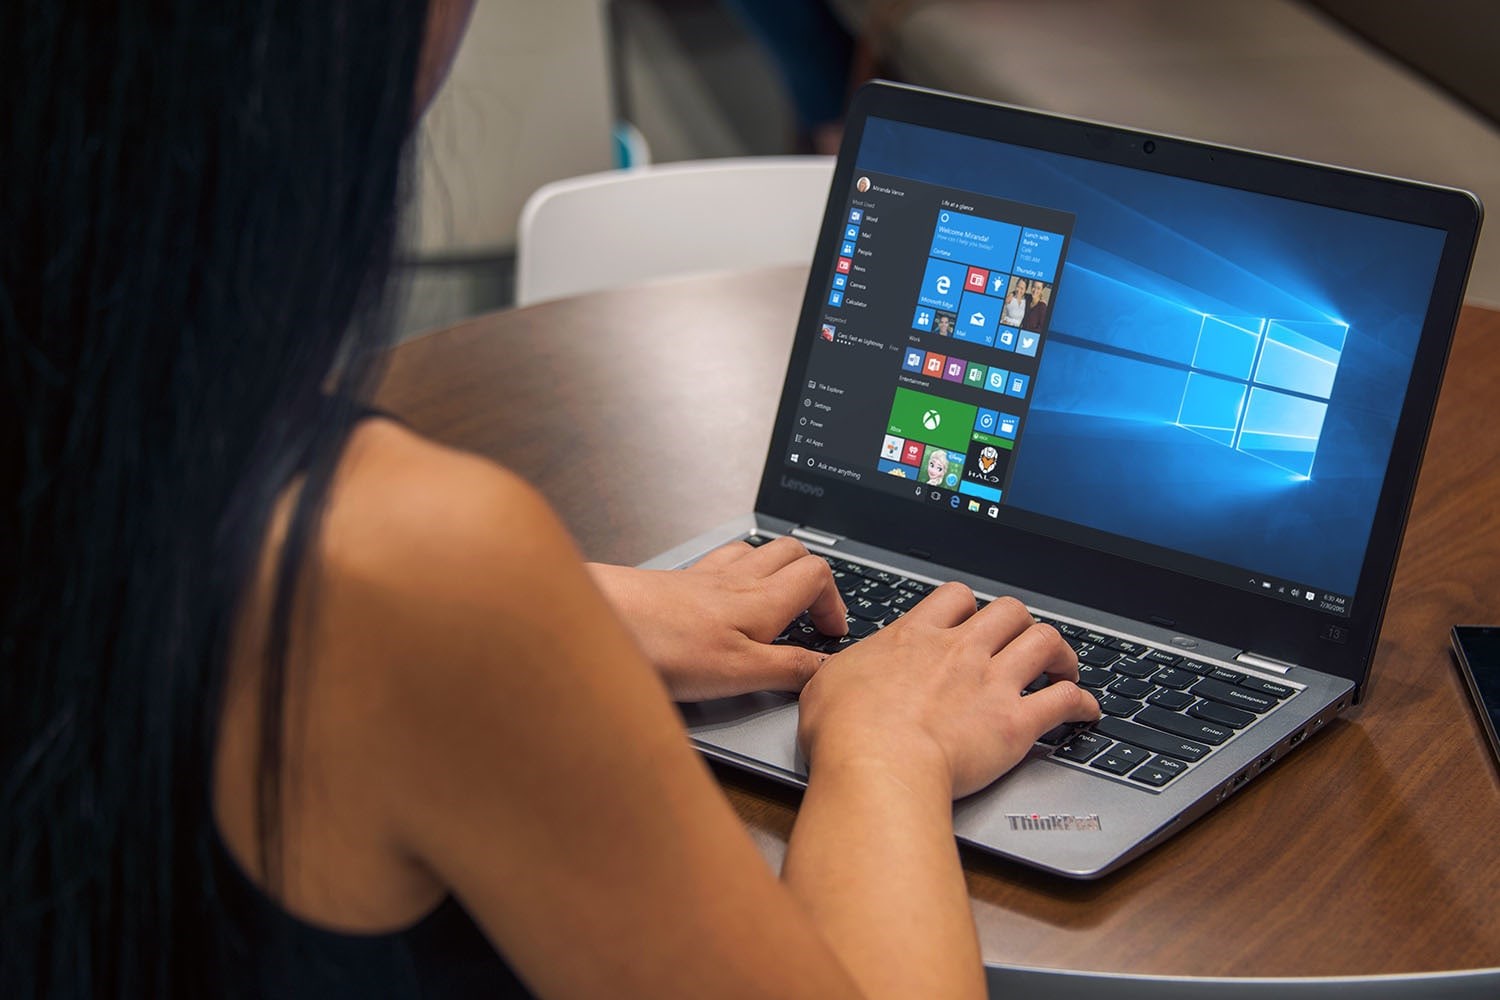 Windows 10'un en son sürümünün kullanım oranı %30'a ulaştı